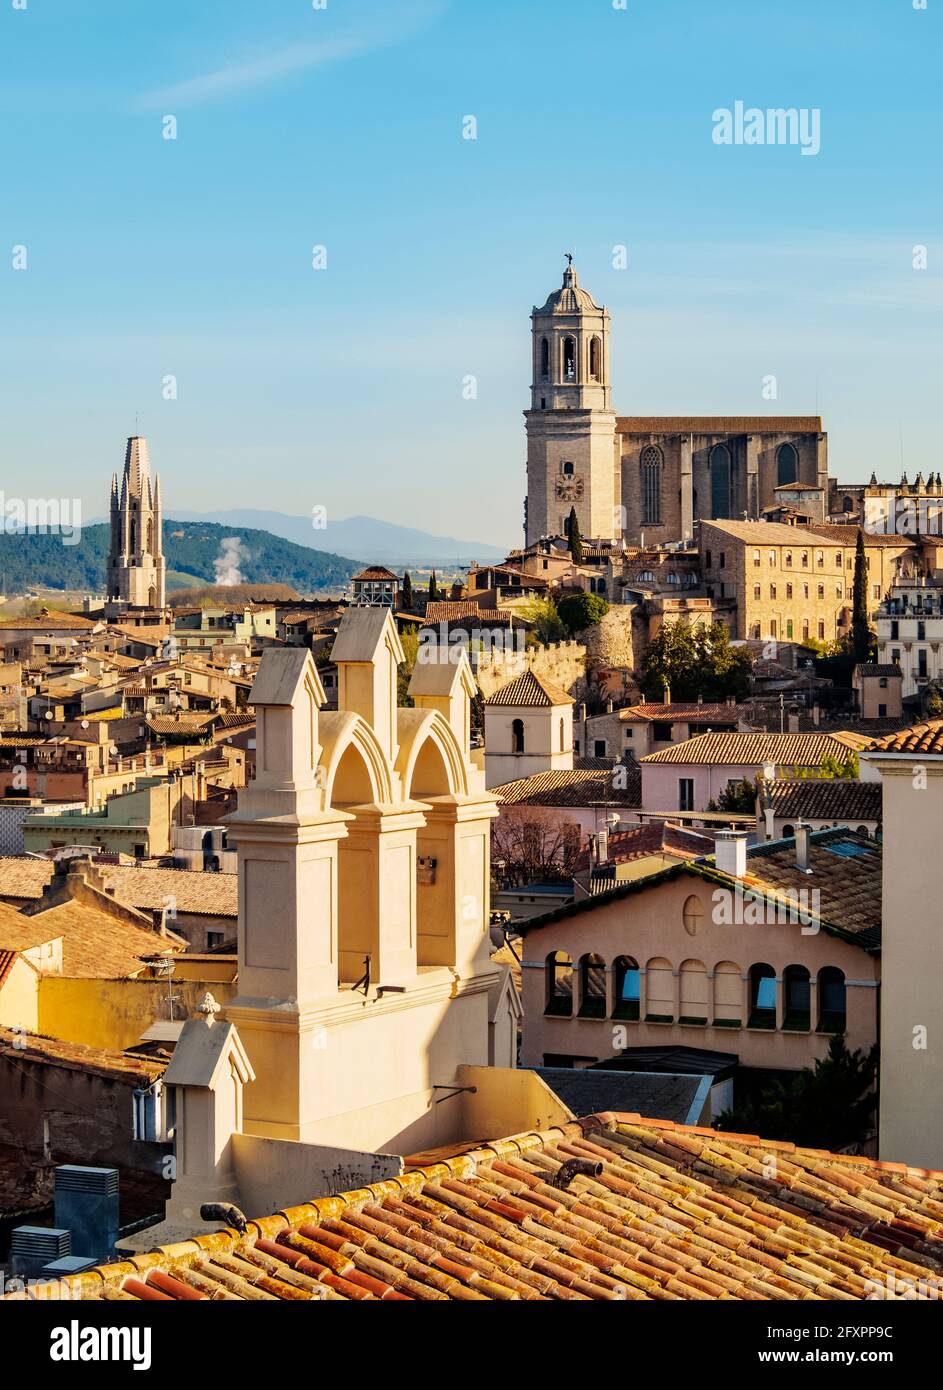 Blick über die Altstadt zur Kathedrale von der Stadtmauer aus gesehen, Girona (Gerona), Katalonien, Spanien, Europa Stockfoto